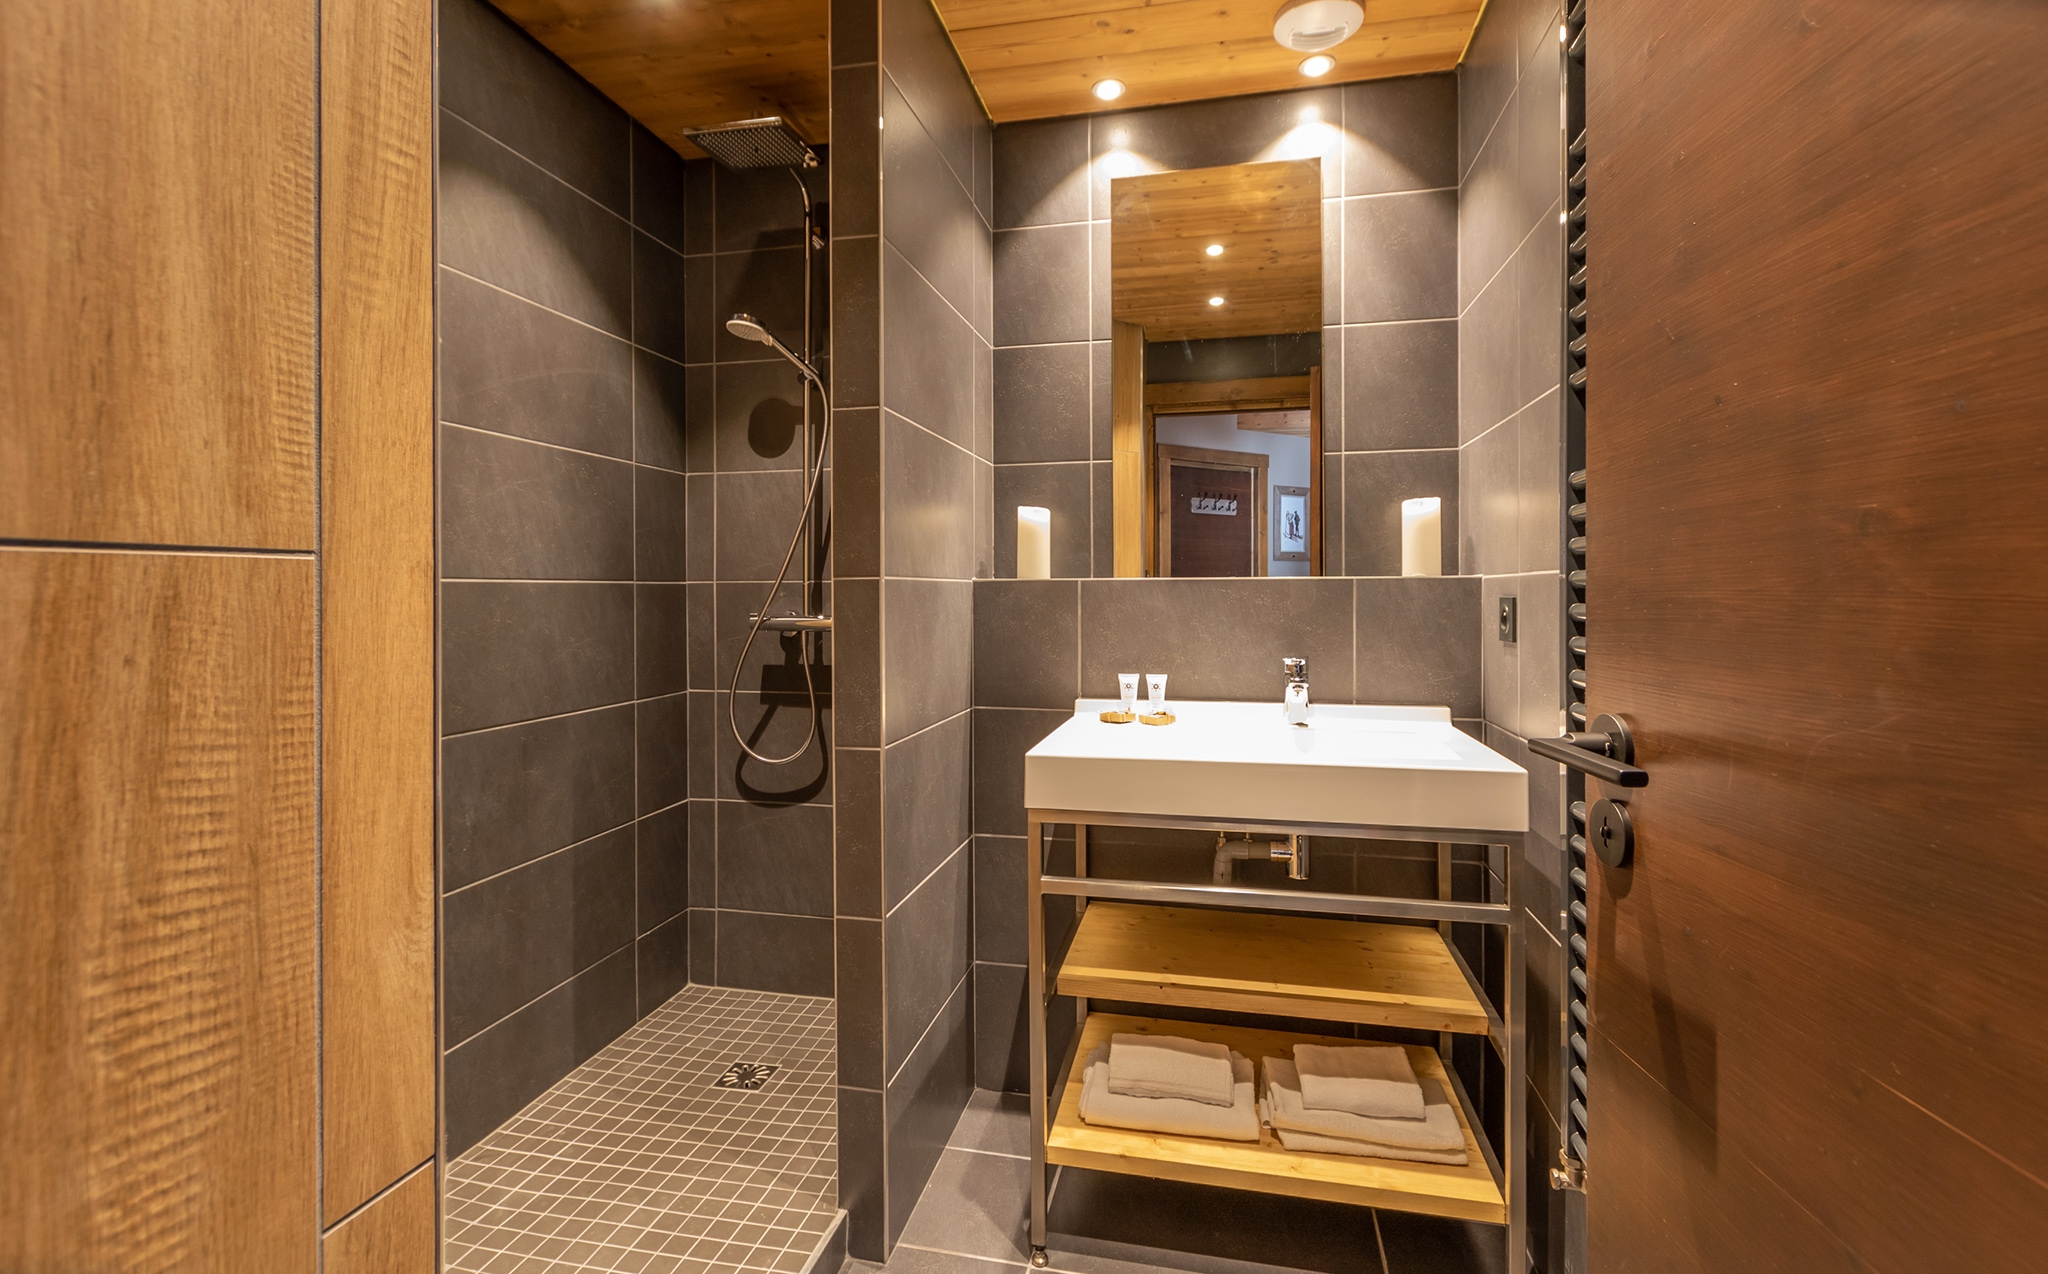 Chalet Altitude: Appartement für 8 Personen - Bad (Beispiel)